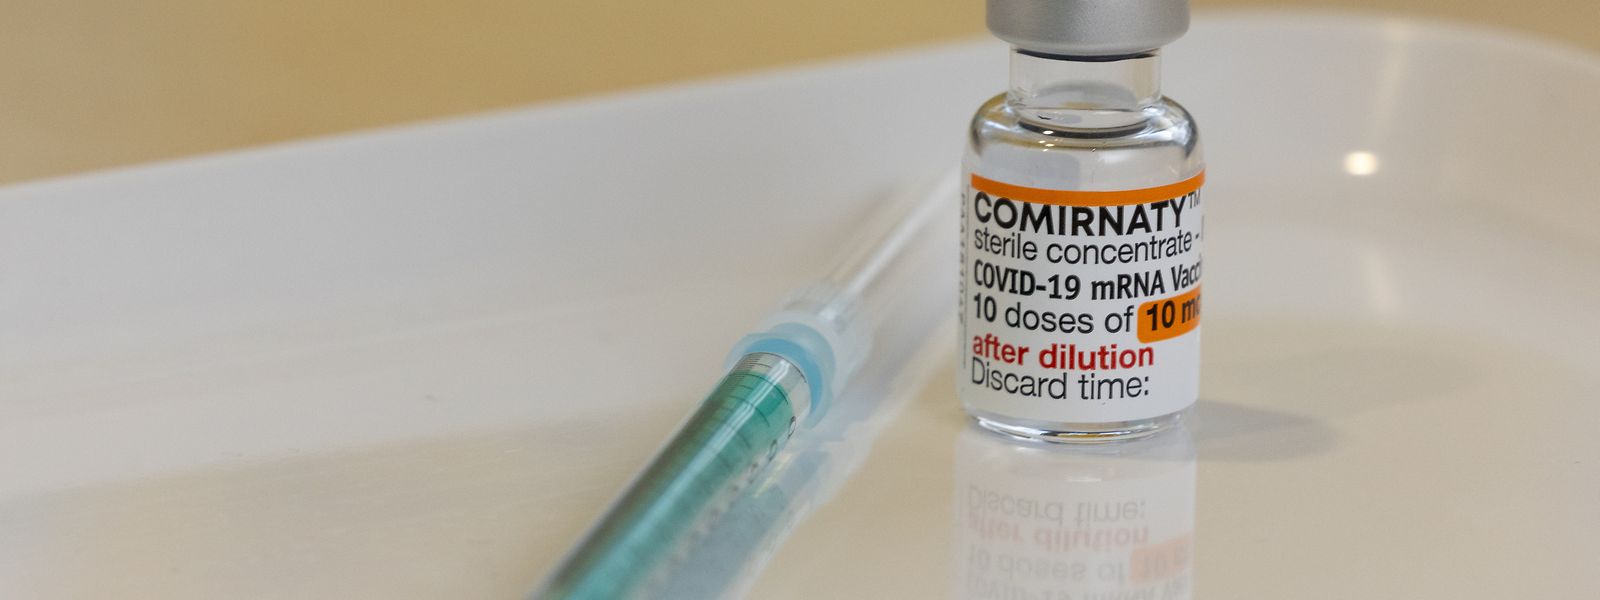 Près de 70% de la population européenne est pleinement vaccinée, selon l'agence de santé ECDC.